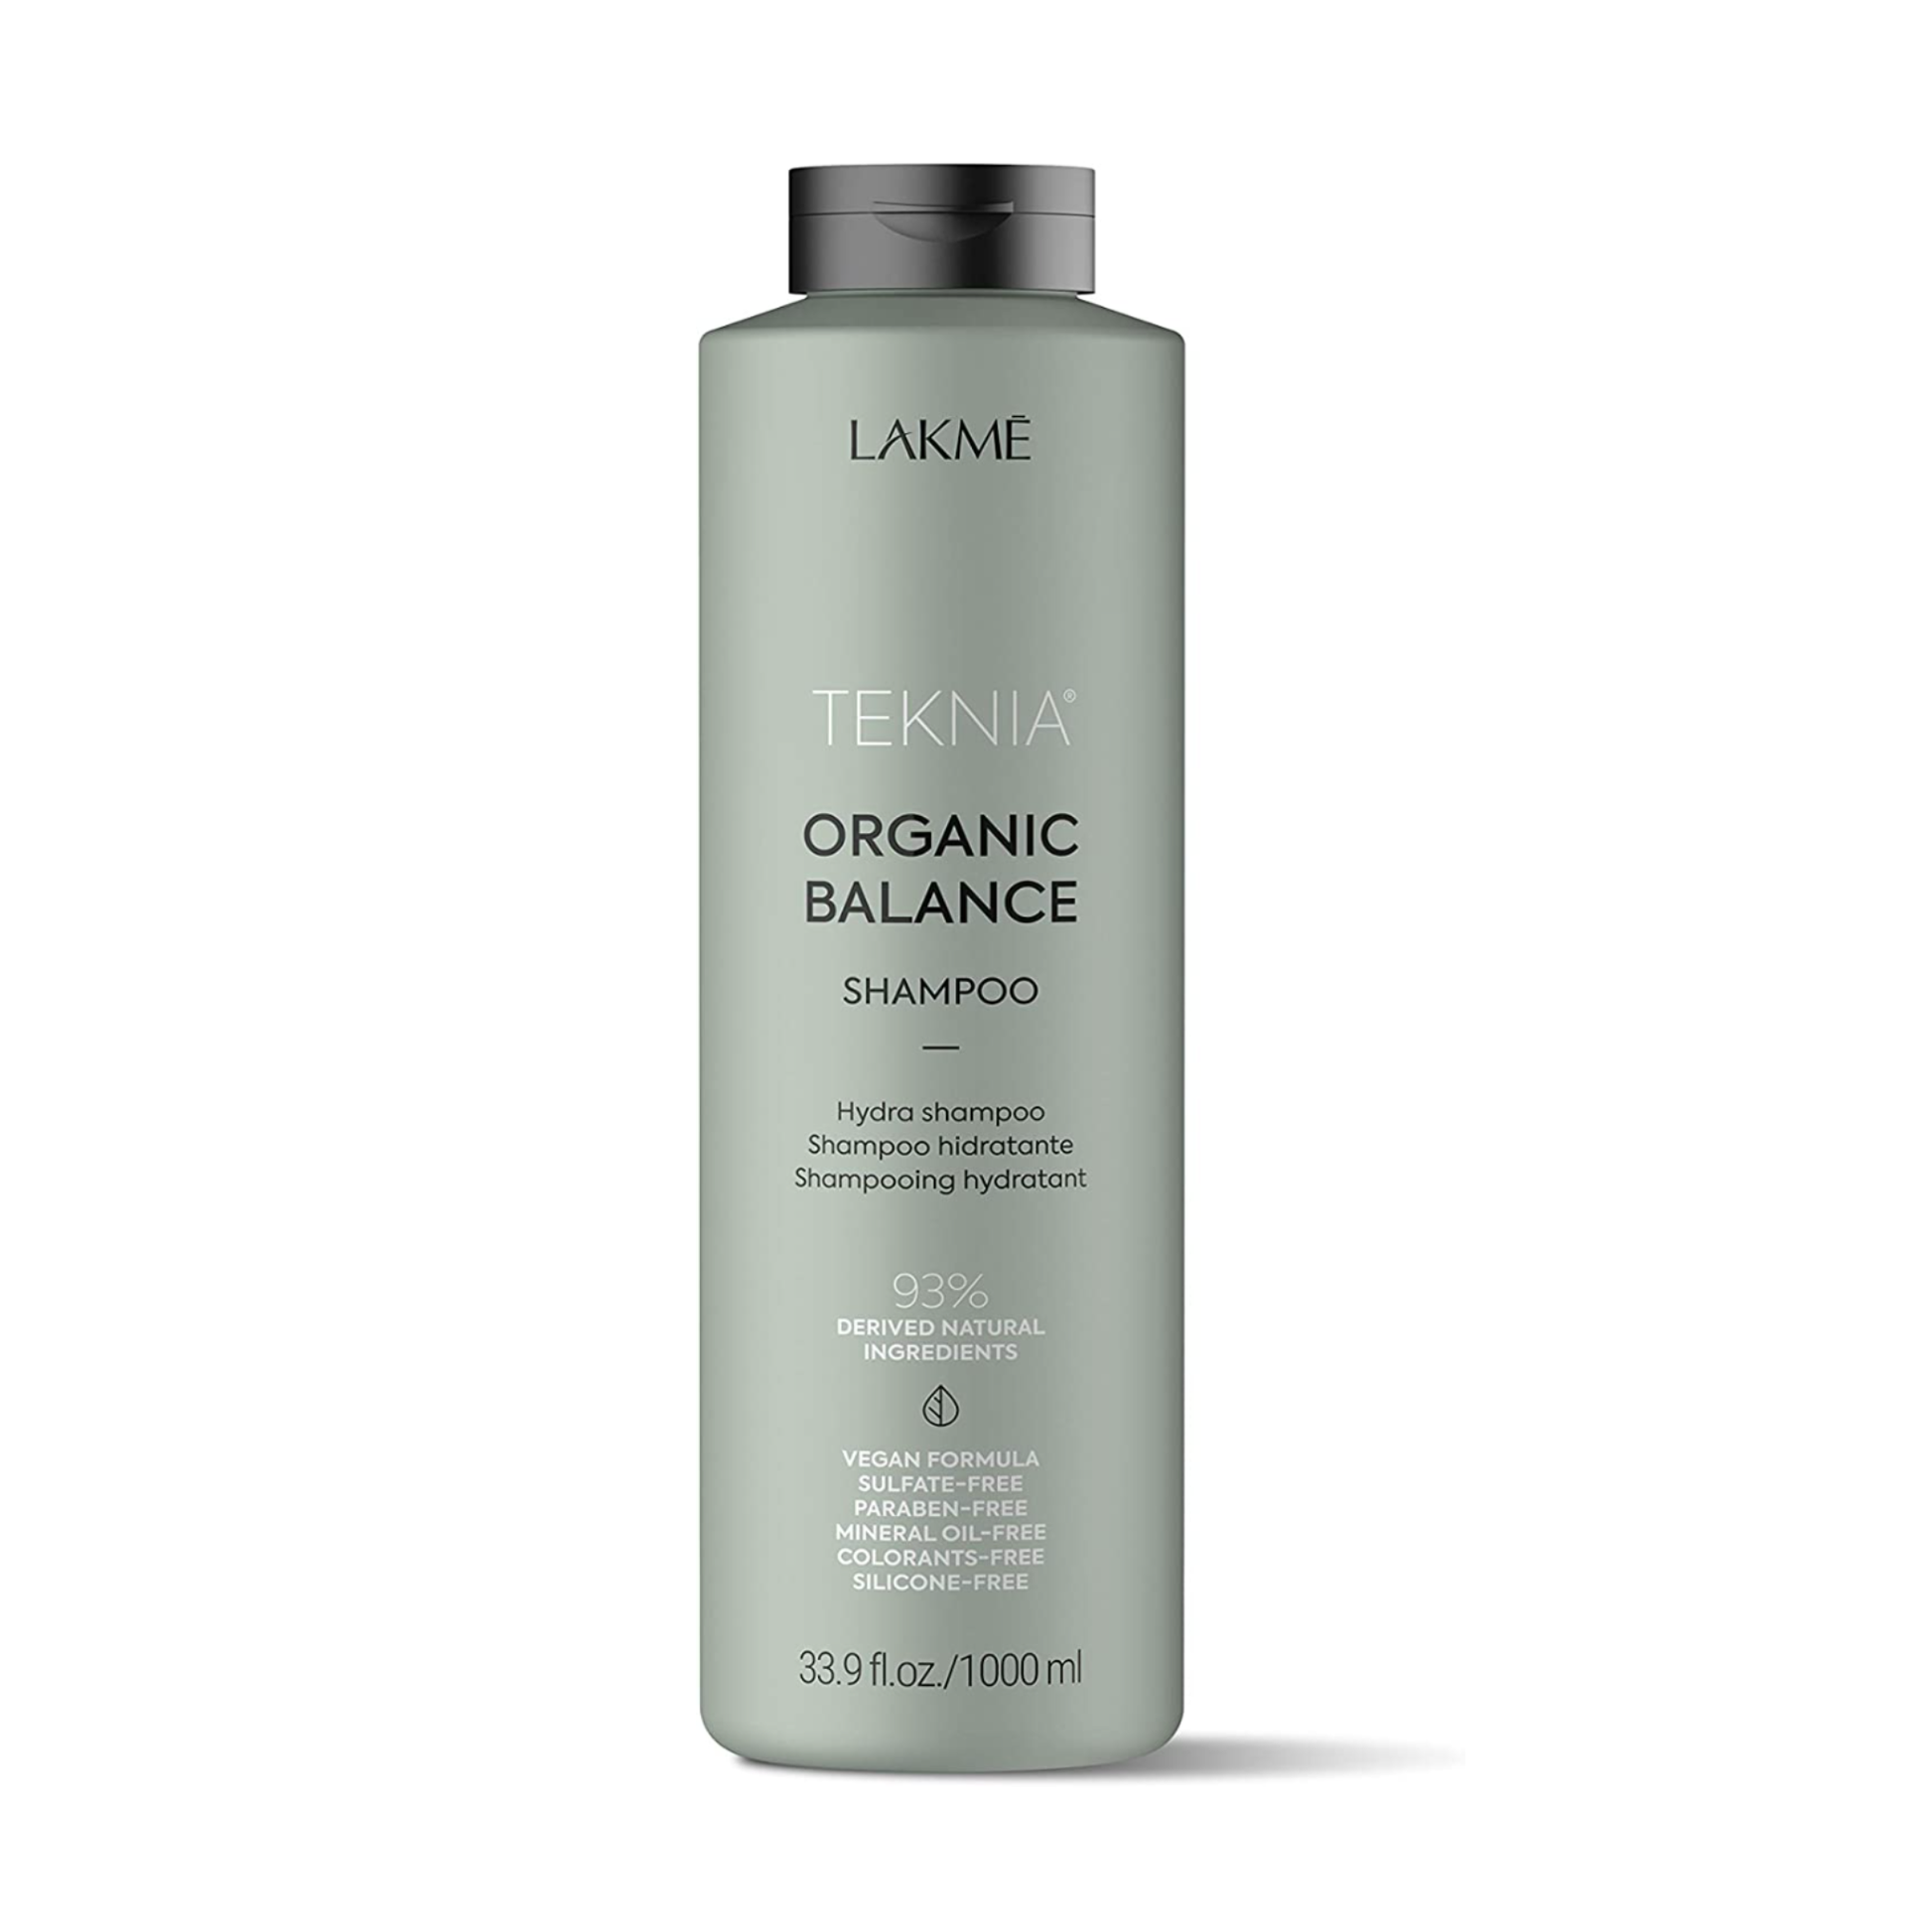 Samarbejdsvillig Peer Lyrical LAKMÉ – Teknia Organic Balance Shampoo 300 ml/1000 ml – ne-kato